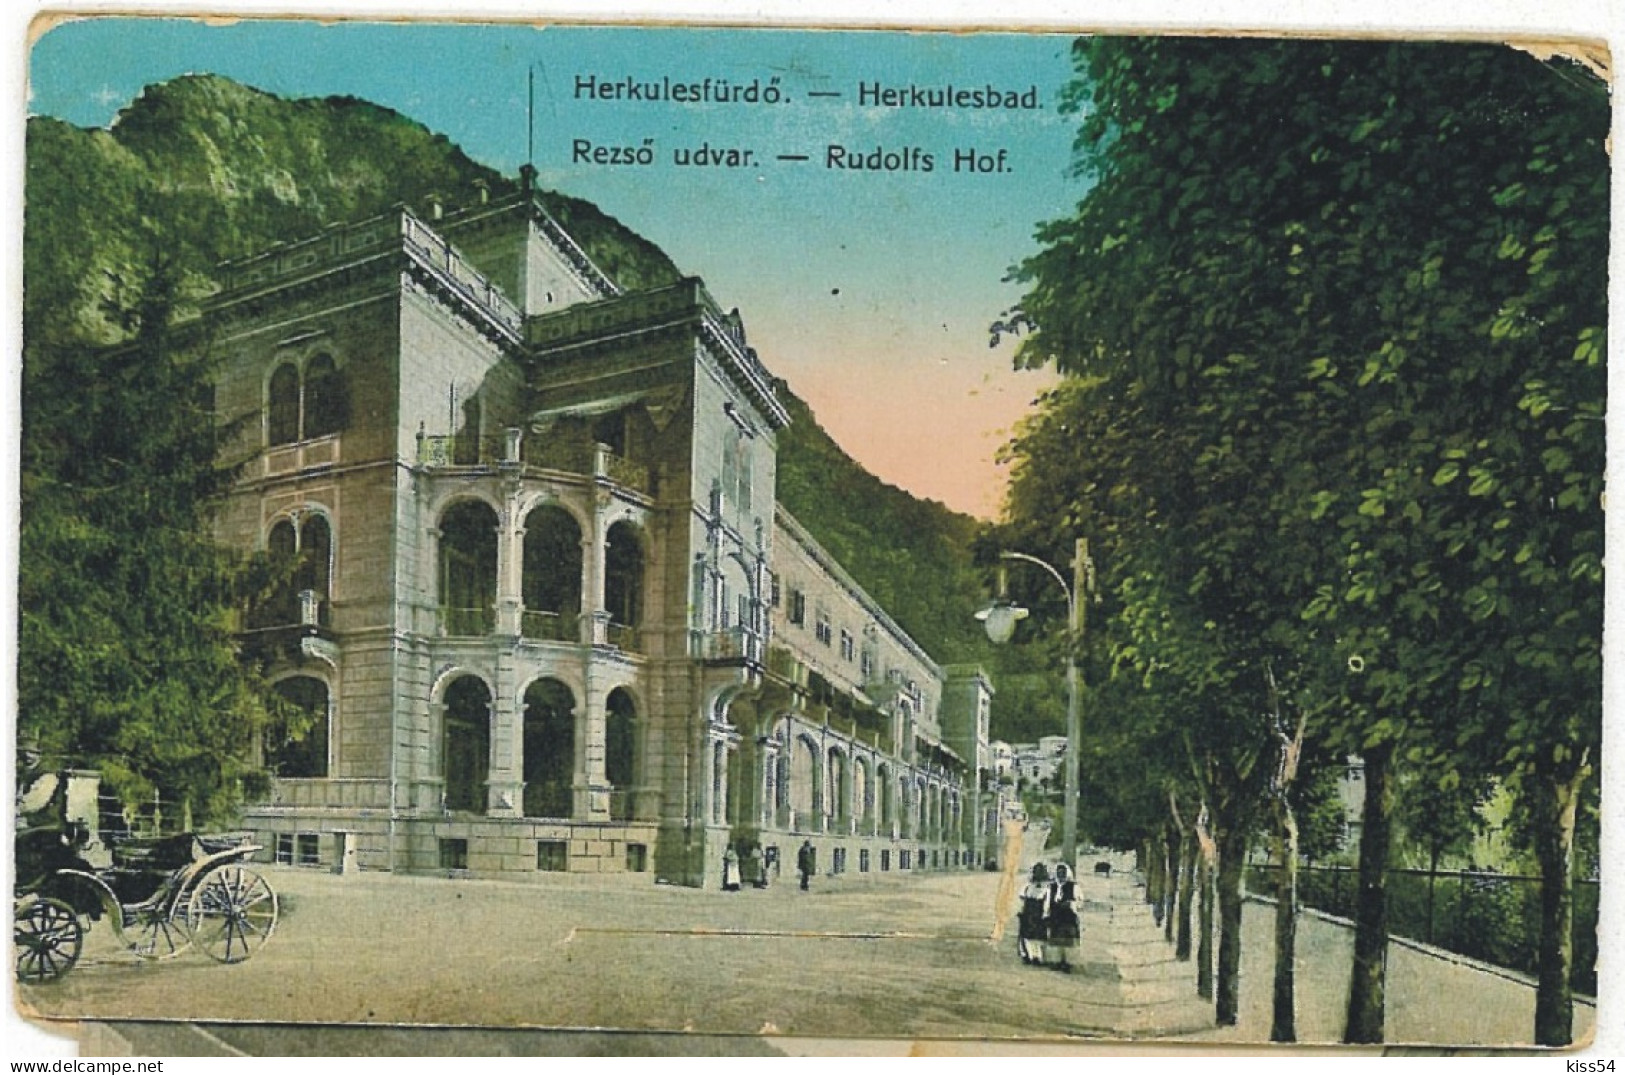 RO 52 - 6084 Baile HERCULANE, Caras-Severin, Romania - Old Postcard +10 Mini Photocards - Used - 1910 - Roumanie